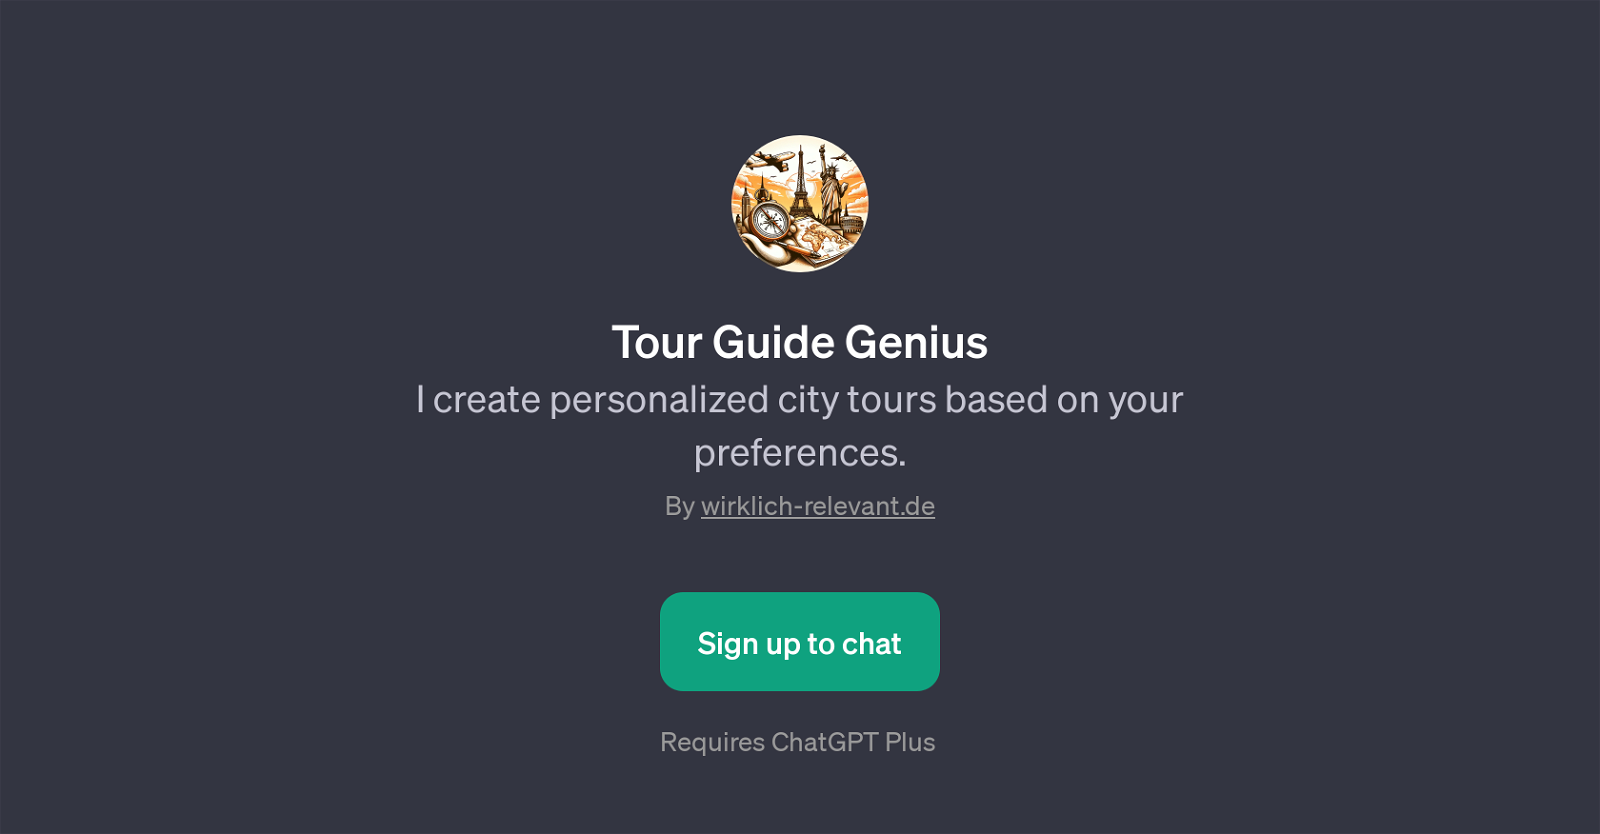 Tour Guide Genius website